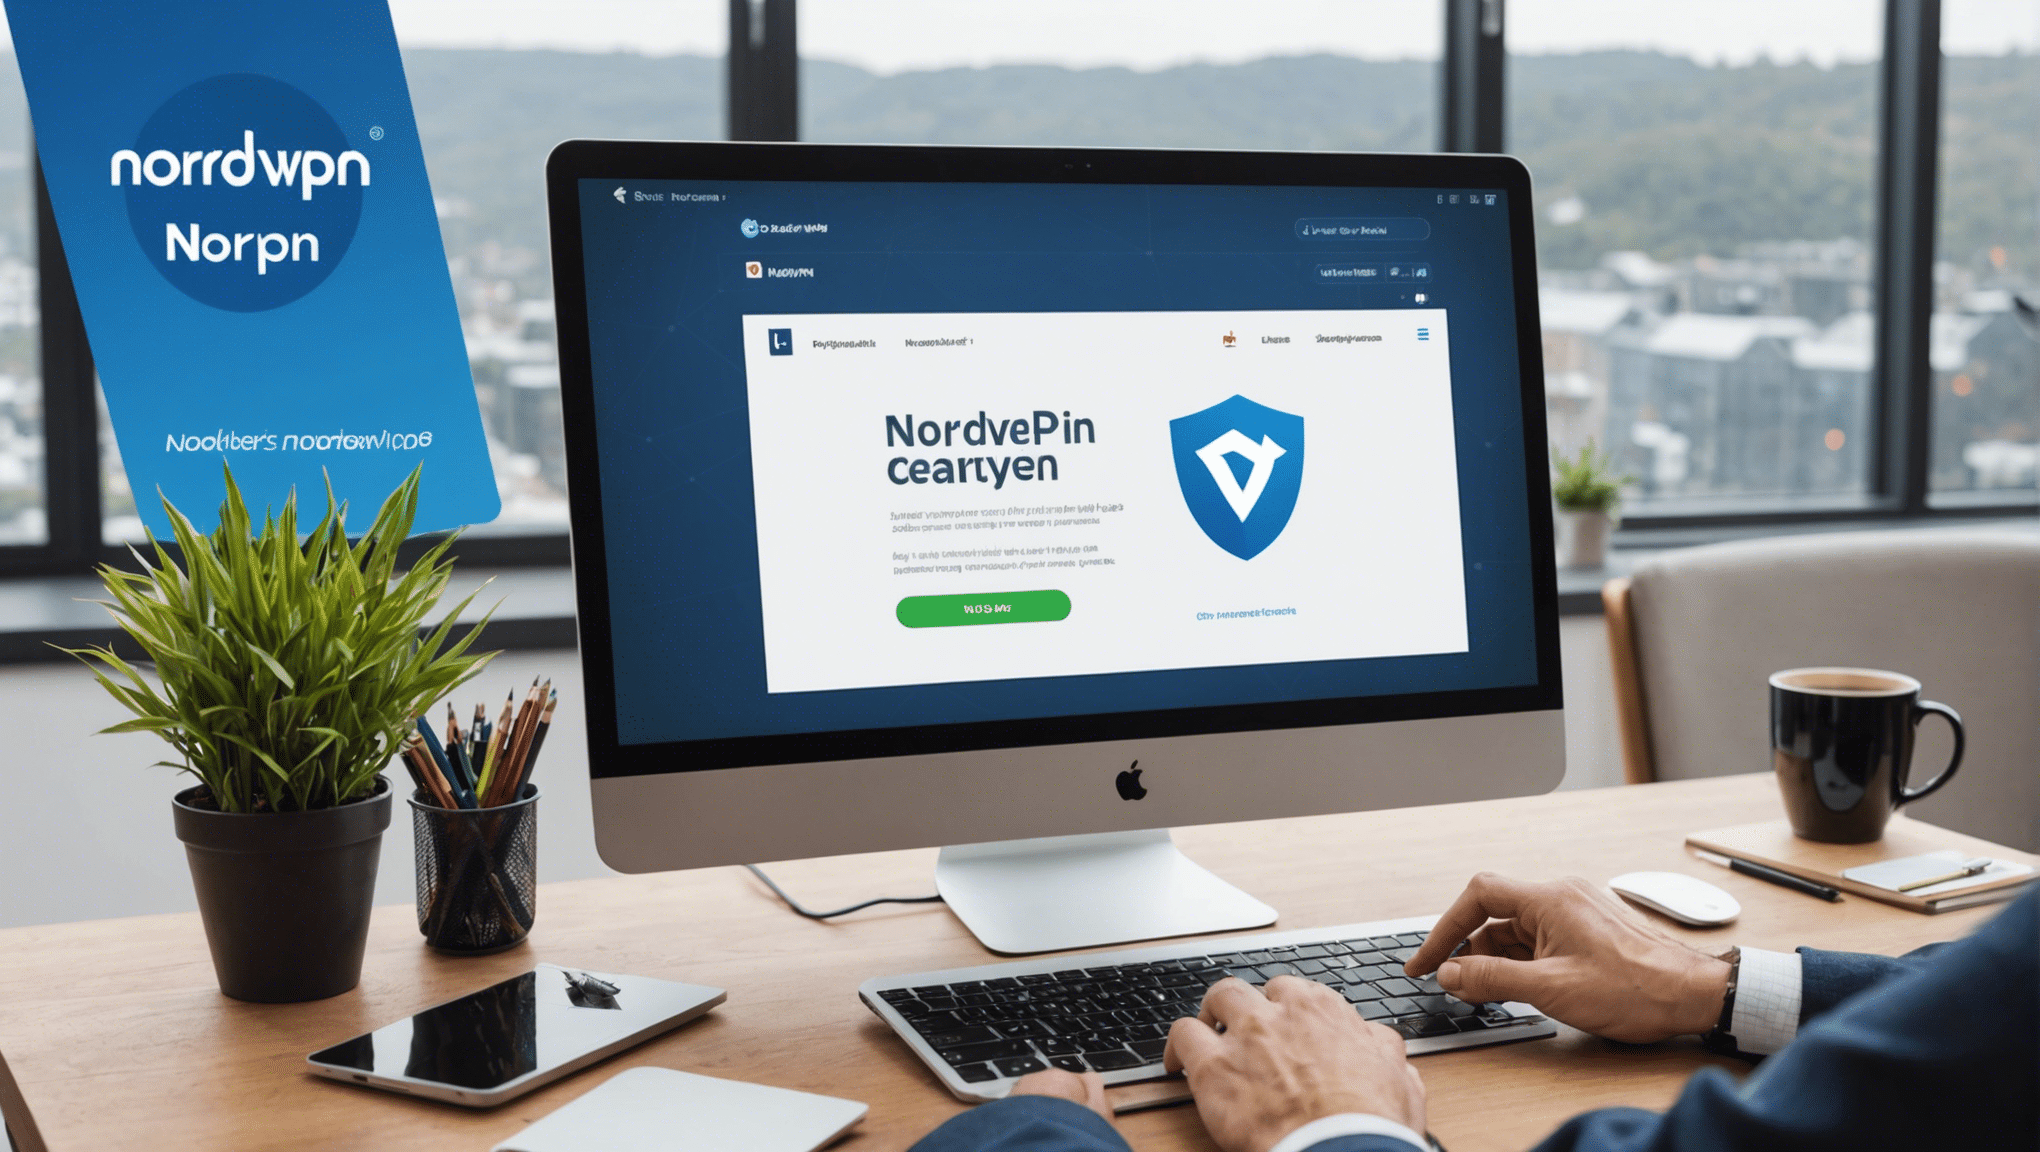 découvrez pourquoi nordvpn est le choix idéal pour sécuriser votre connexion en ligne. profitez d'une protection fiable et d'une confidentialité totale avec nordvpn.